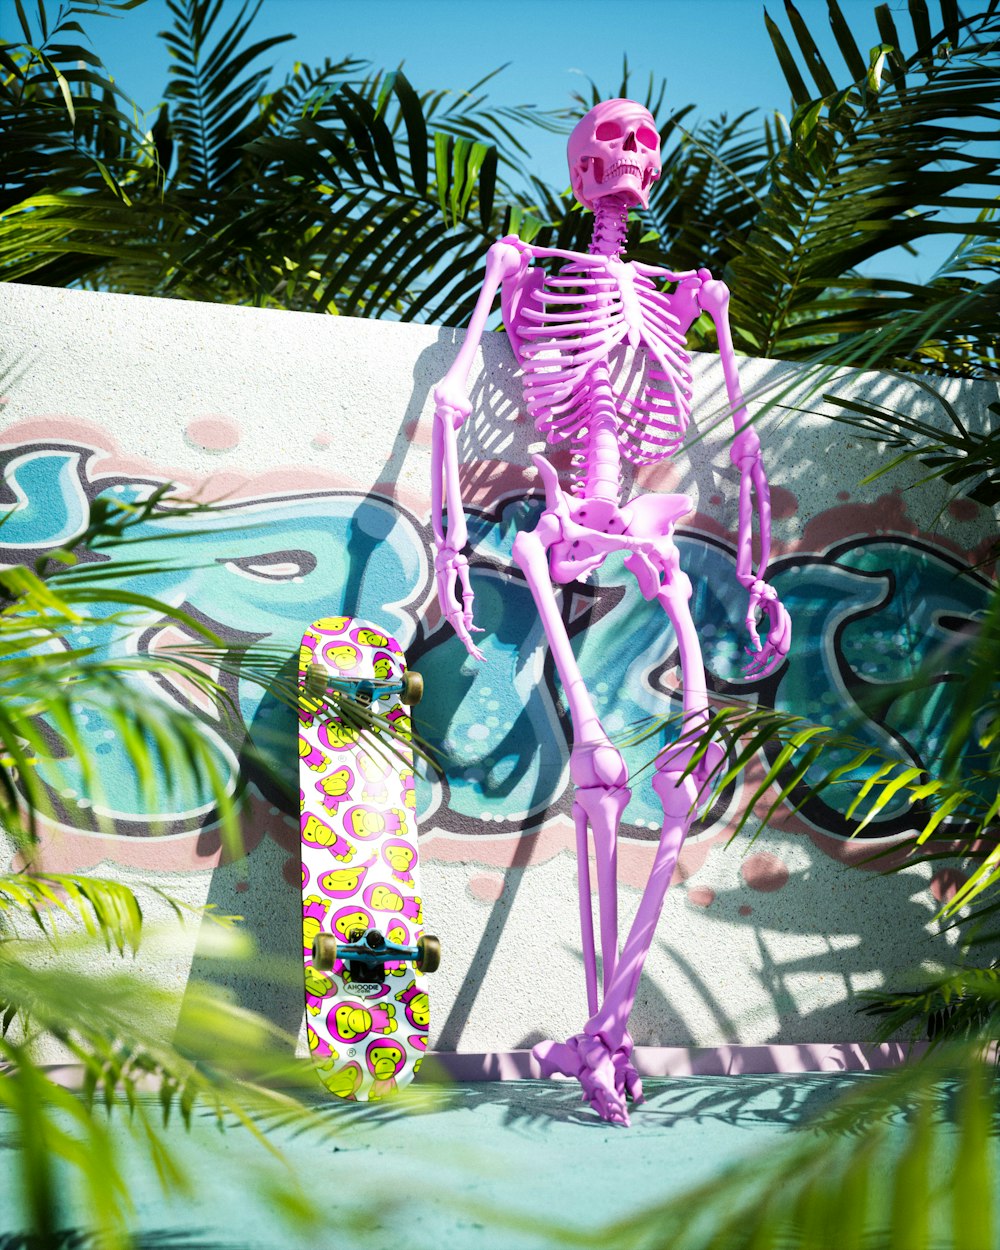 Un esqueleto rosa sentado encima de una patineta